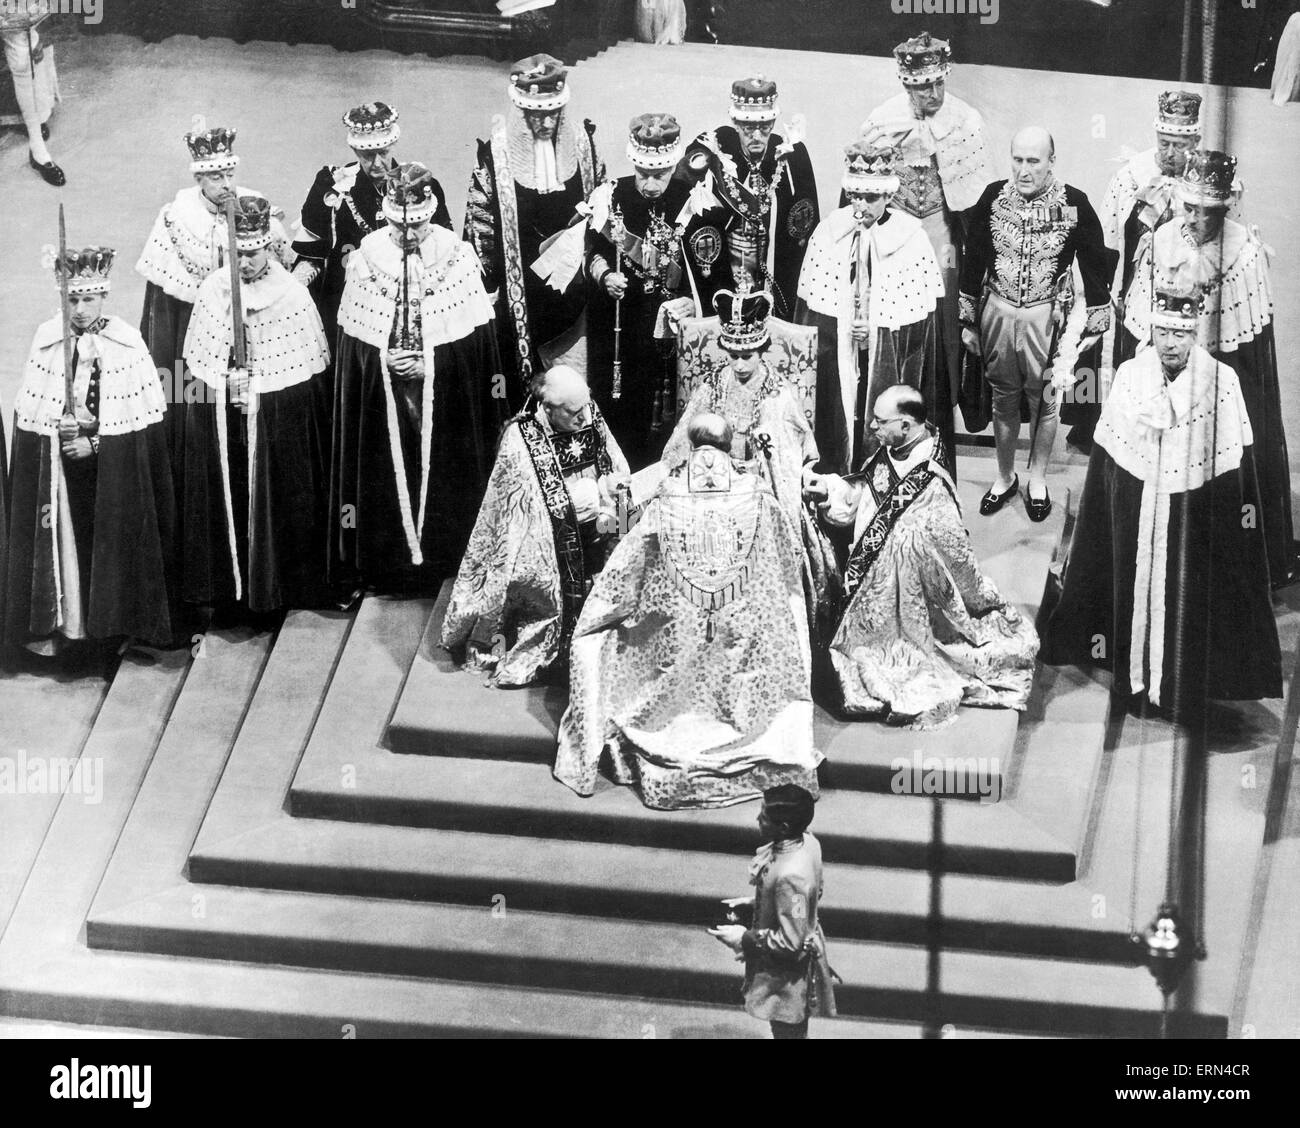 La coronación de la Reina Elizabeth II fue la ceremonia en la que el recién ascendido monarca, Isabel II, fue coronada como Reina del Reino Unido, Canadá, Australia, Nueva Zelanda, Sudáfrica, Ceilán,